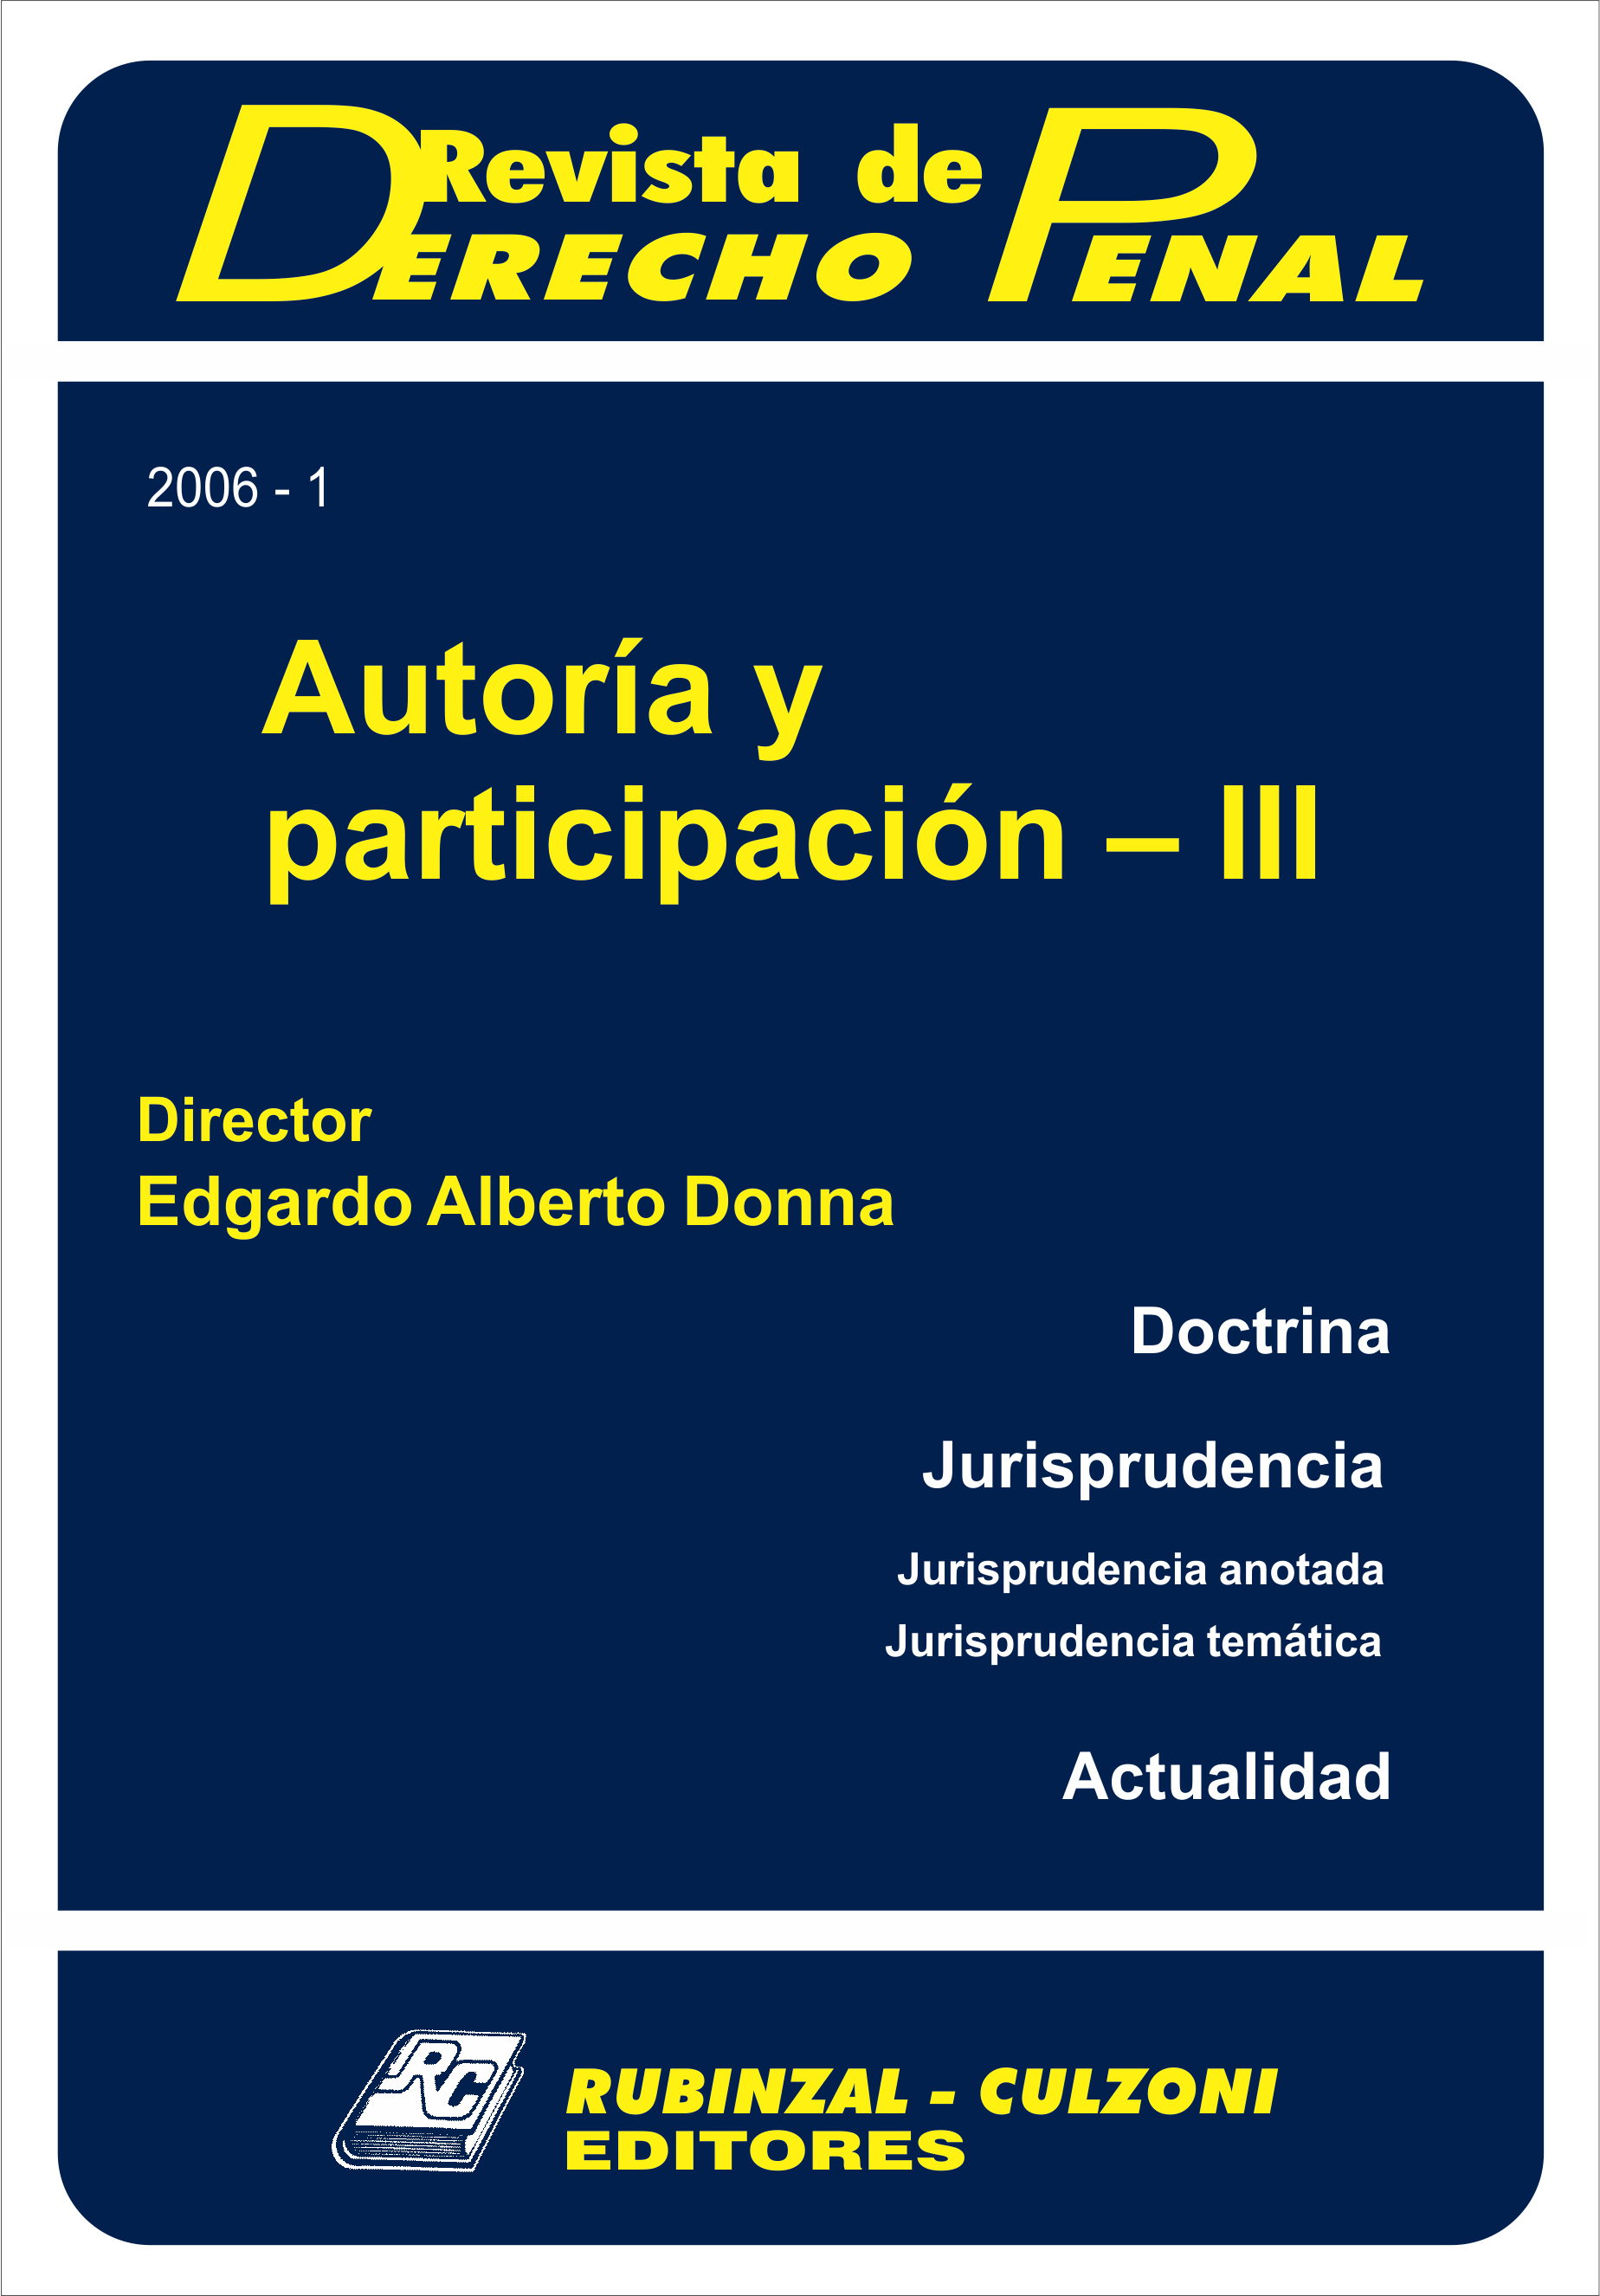 Revista de Derecho Penal - Autoría y participación - III